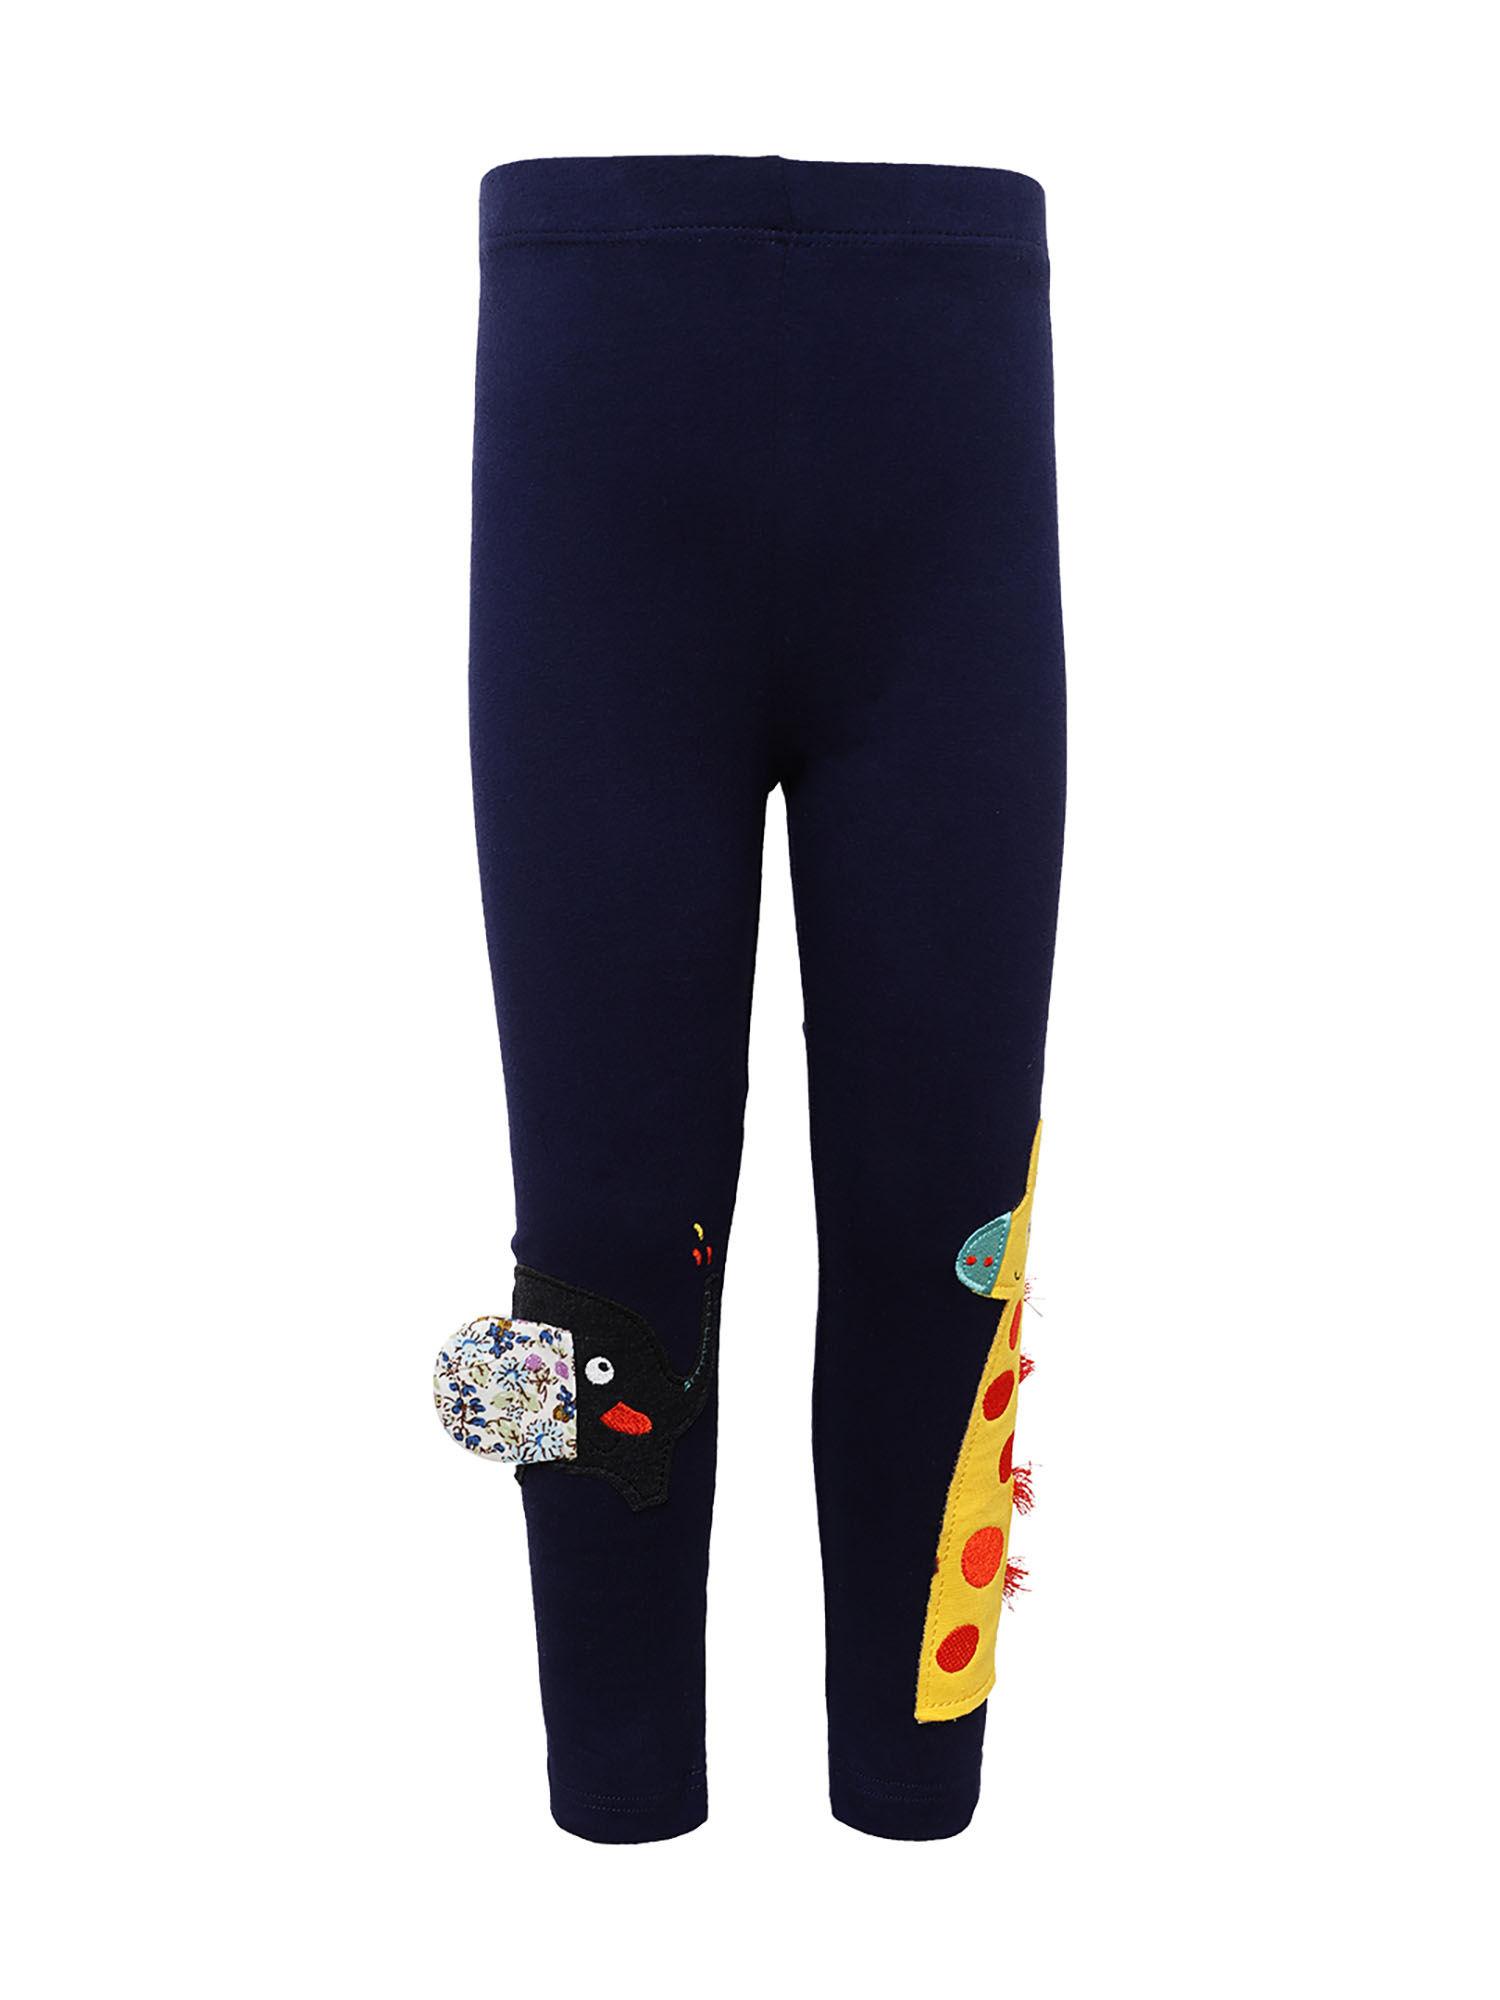 girls navy blue embroidered leggings